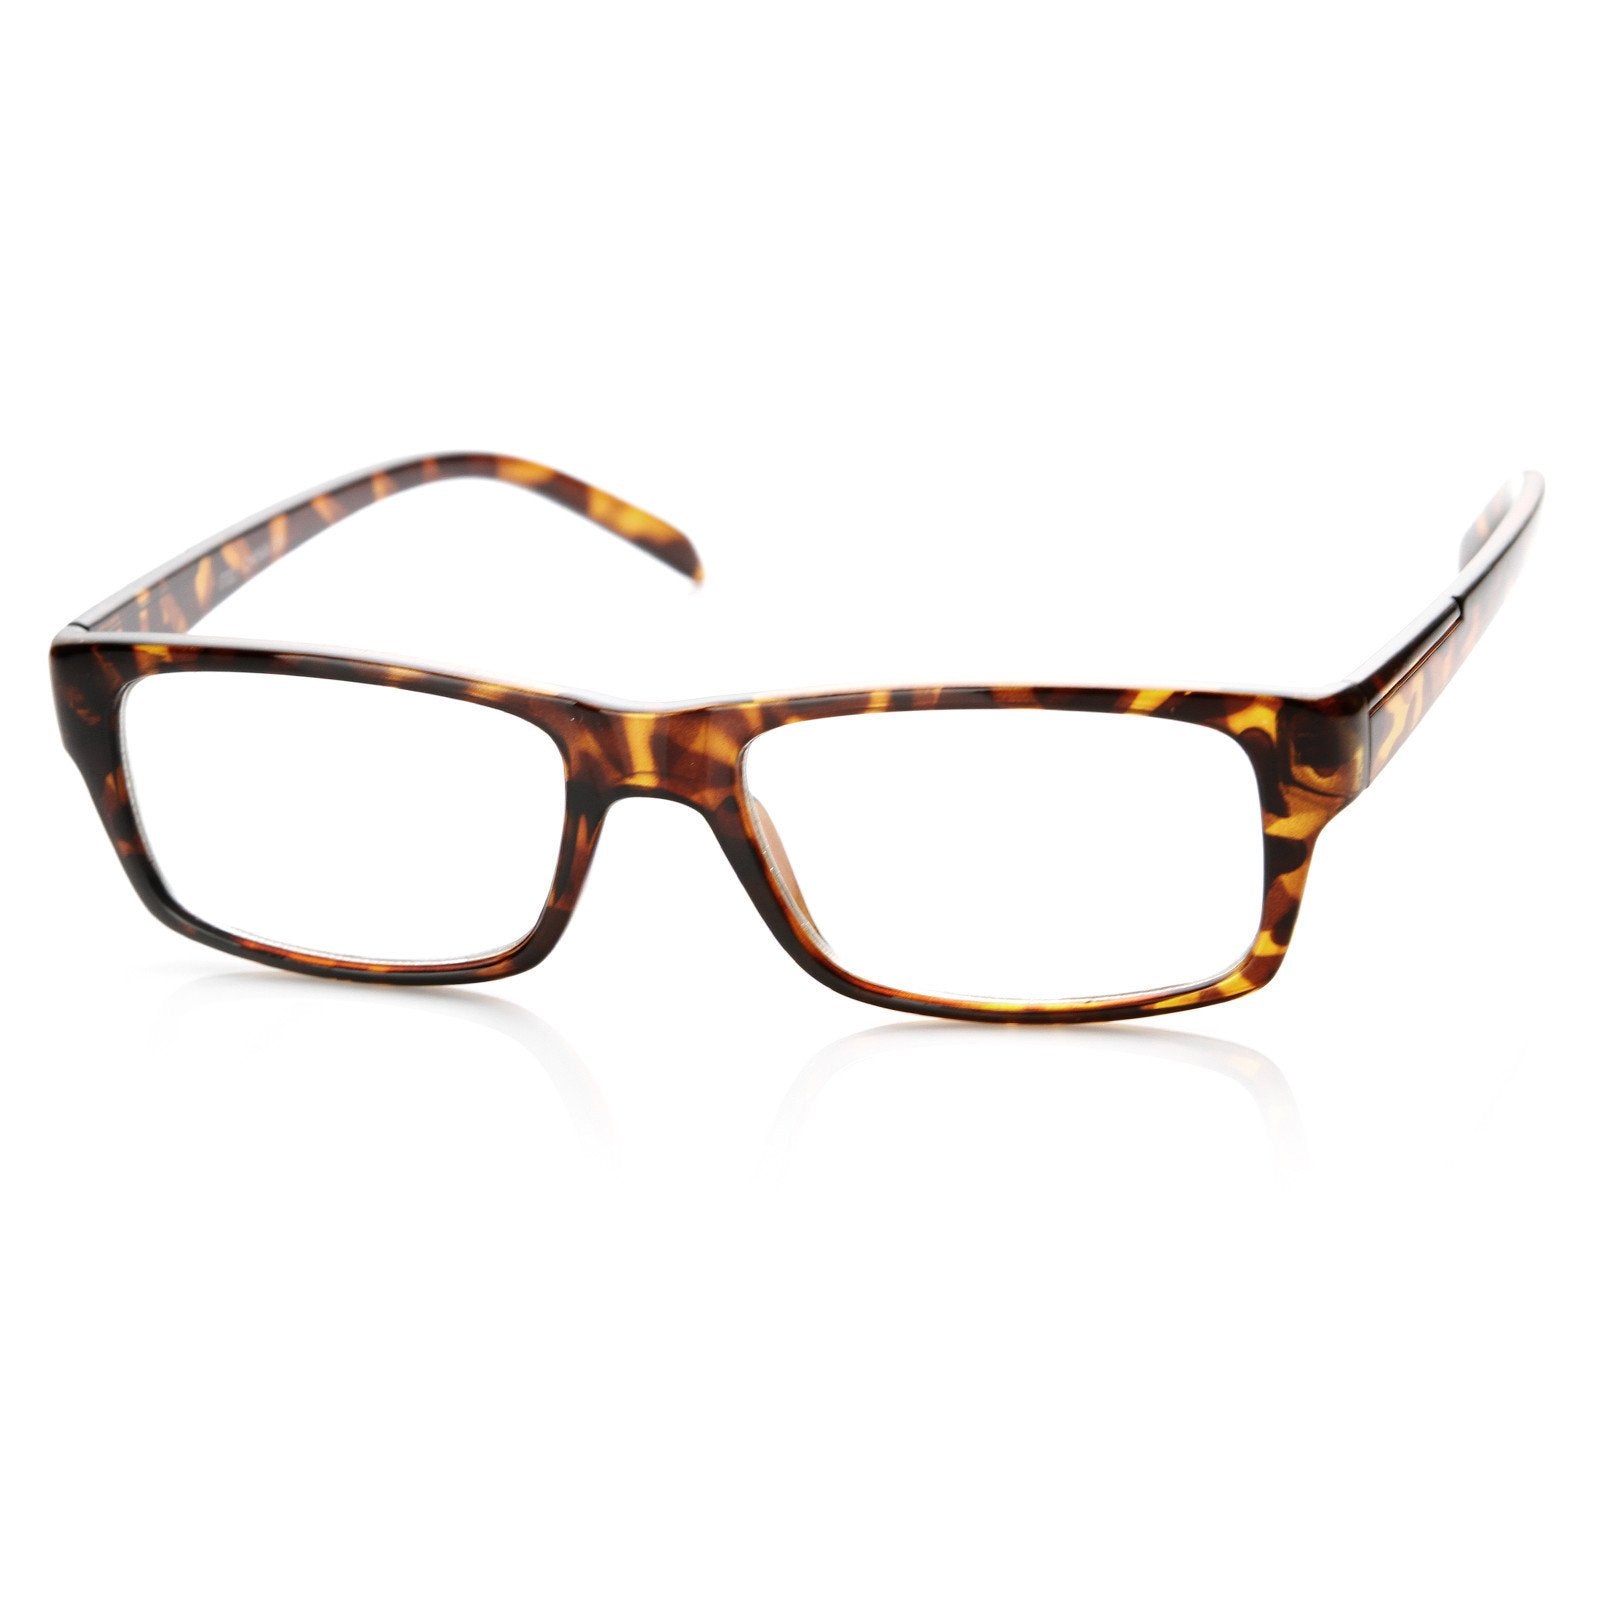 Nuevo Marco óptico cuadrado lentes transparentes gafas de moda 8716